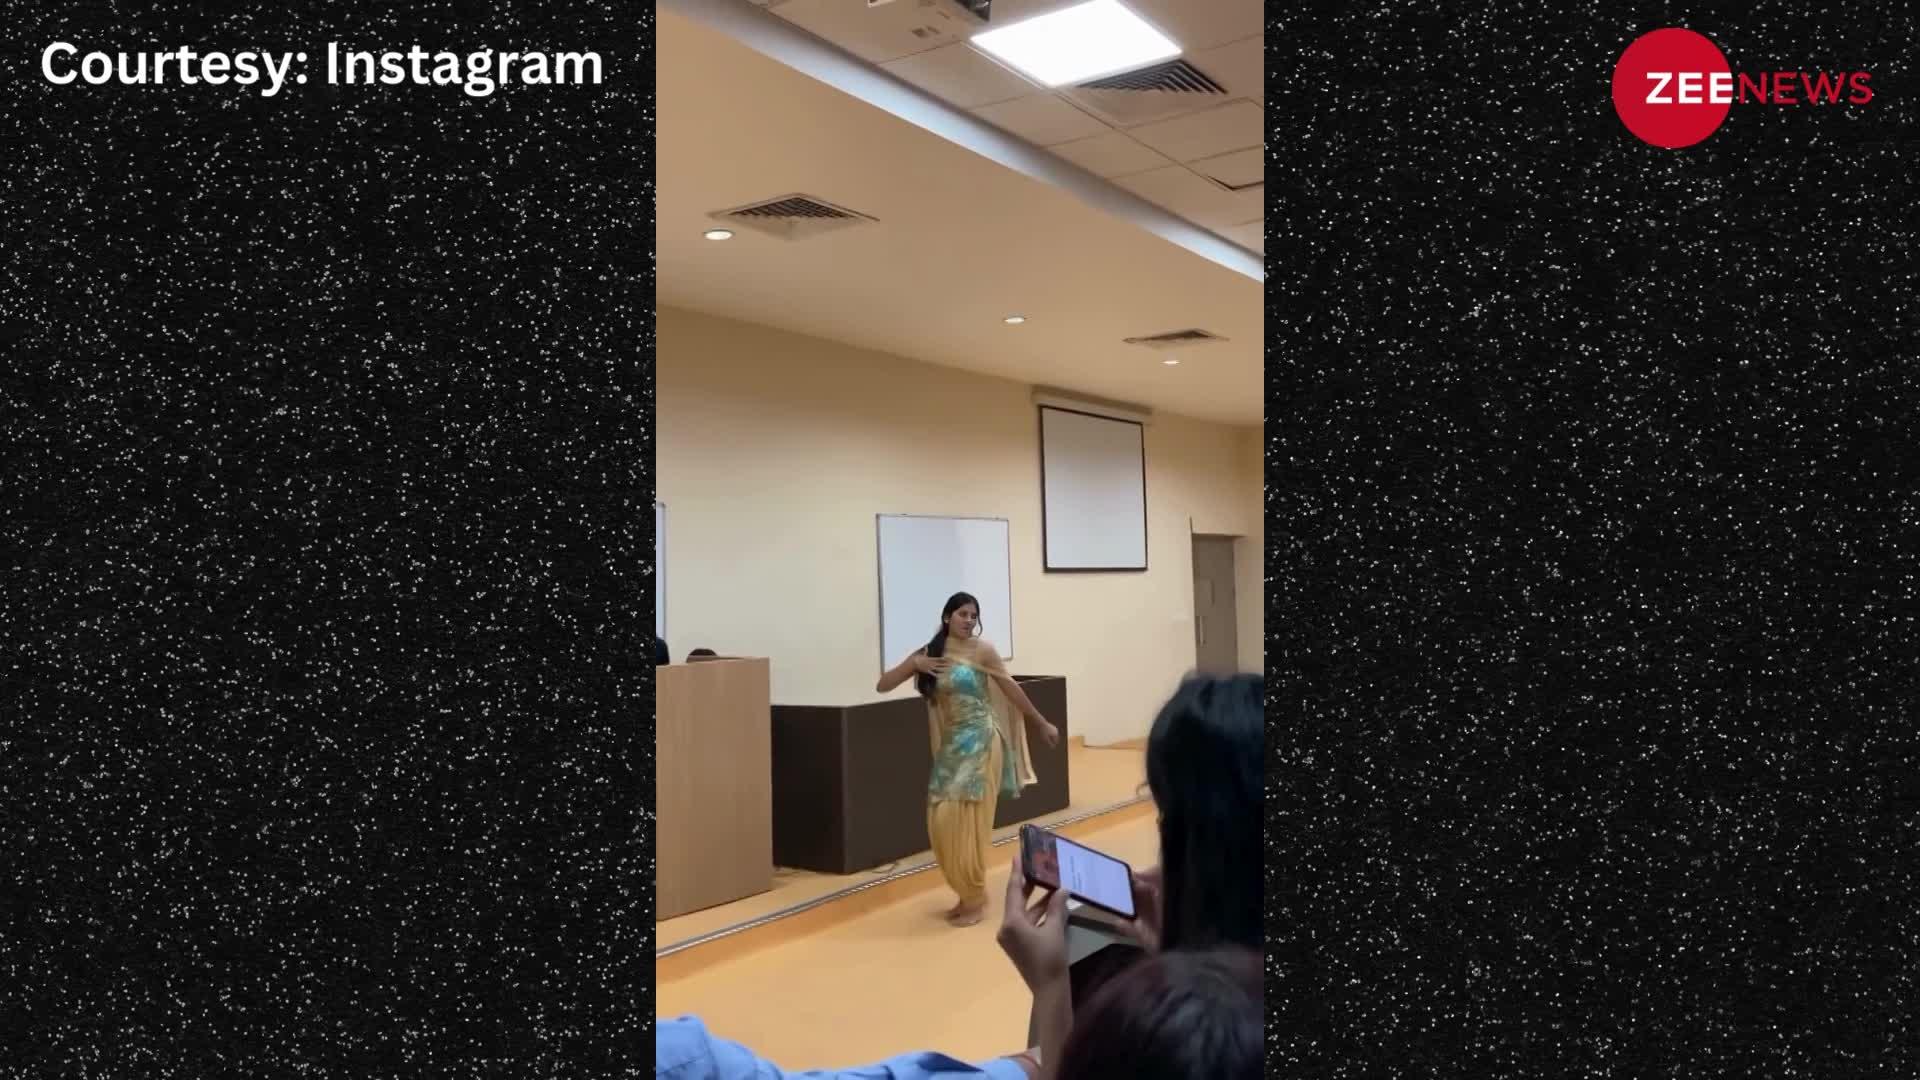 कॉलेज की लड़की ने सपना चौधरी के गाने 'जले' पर किया शानदार डांस, वीडियो ने मचाई सोशल मीडिया पर धूम